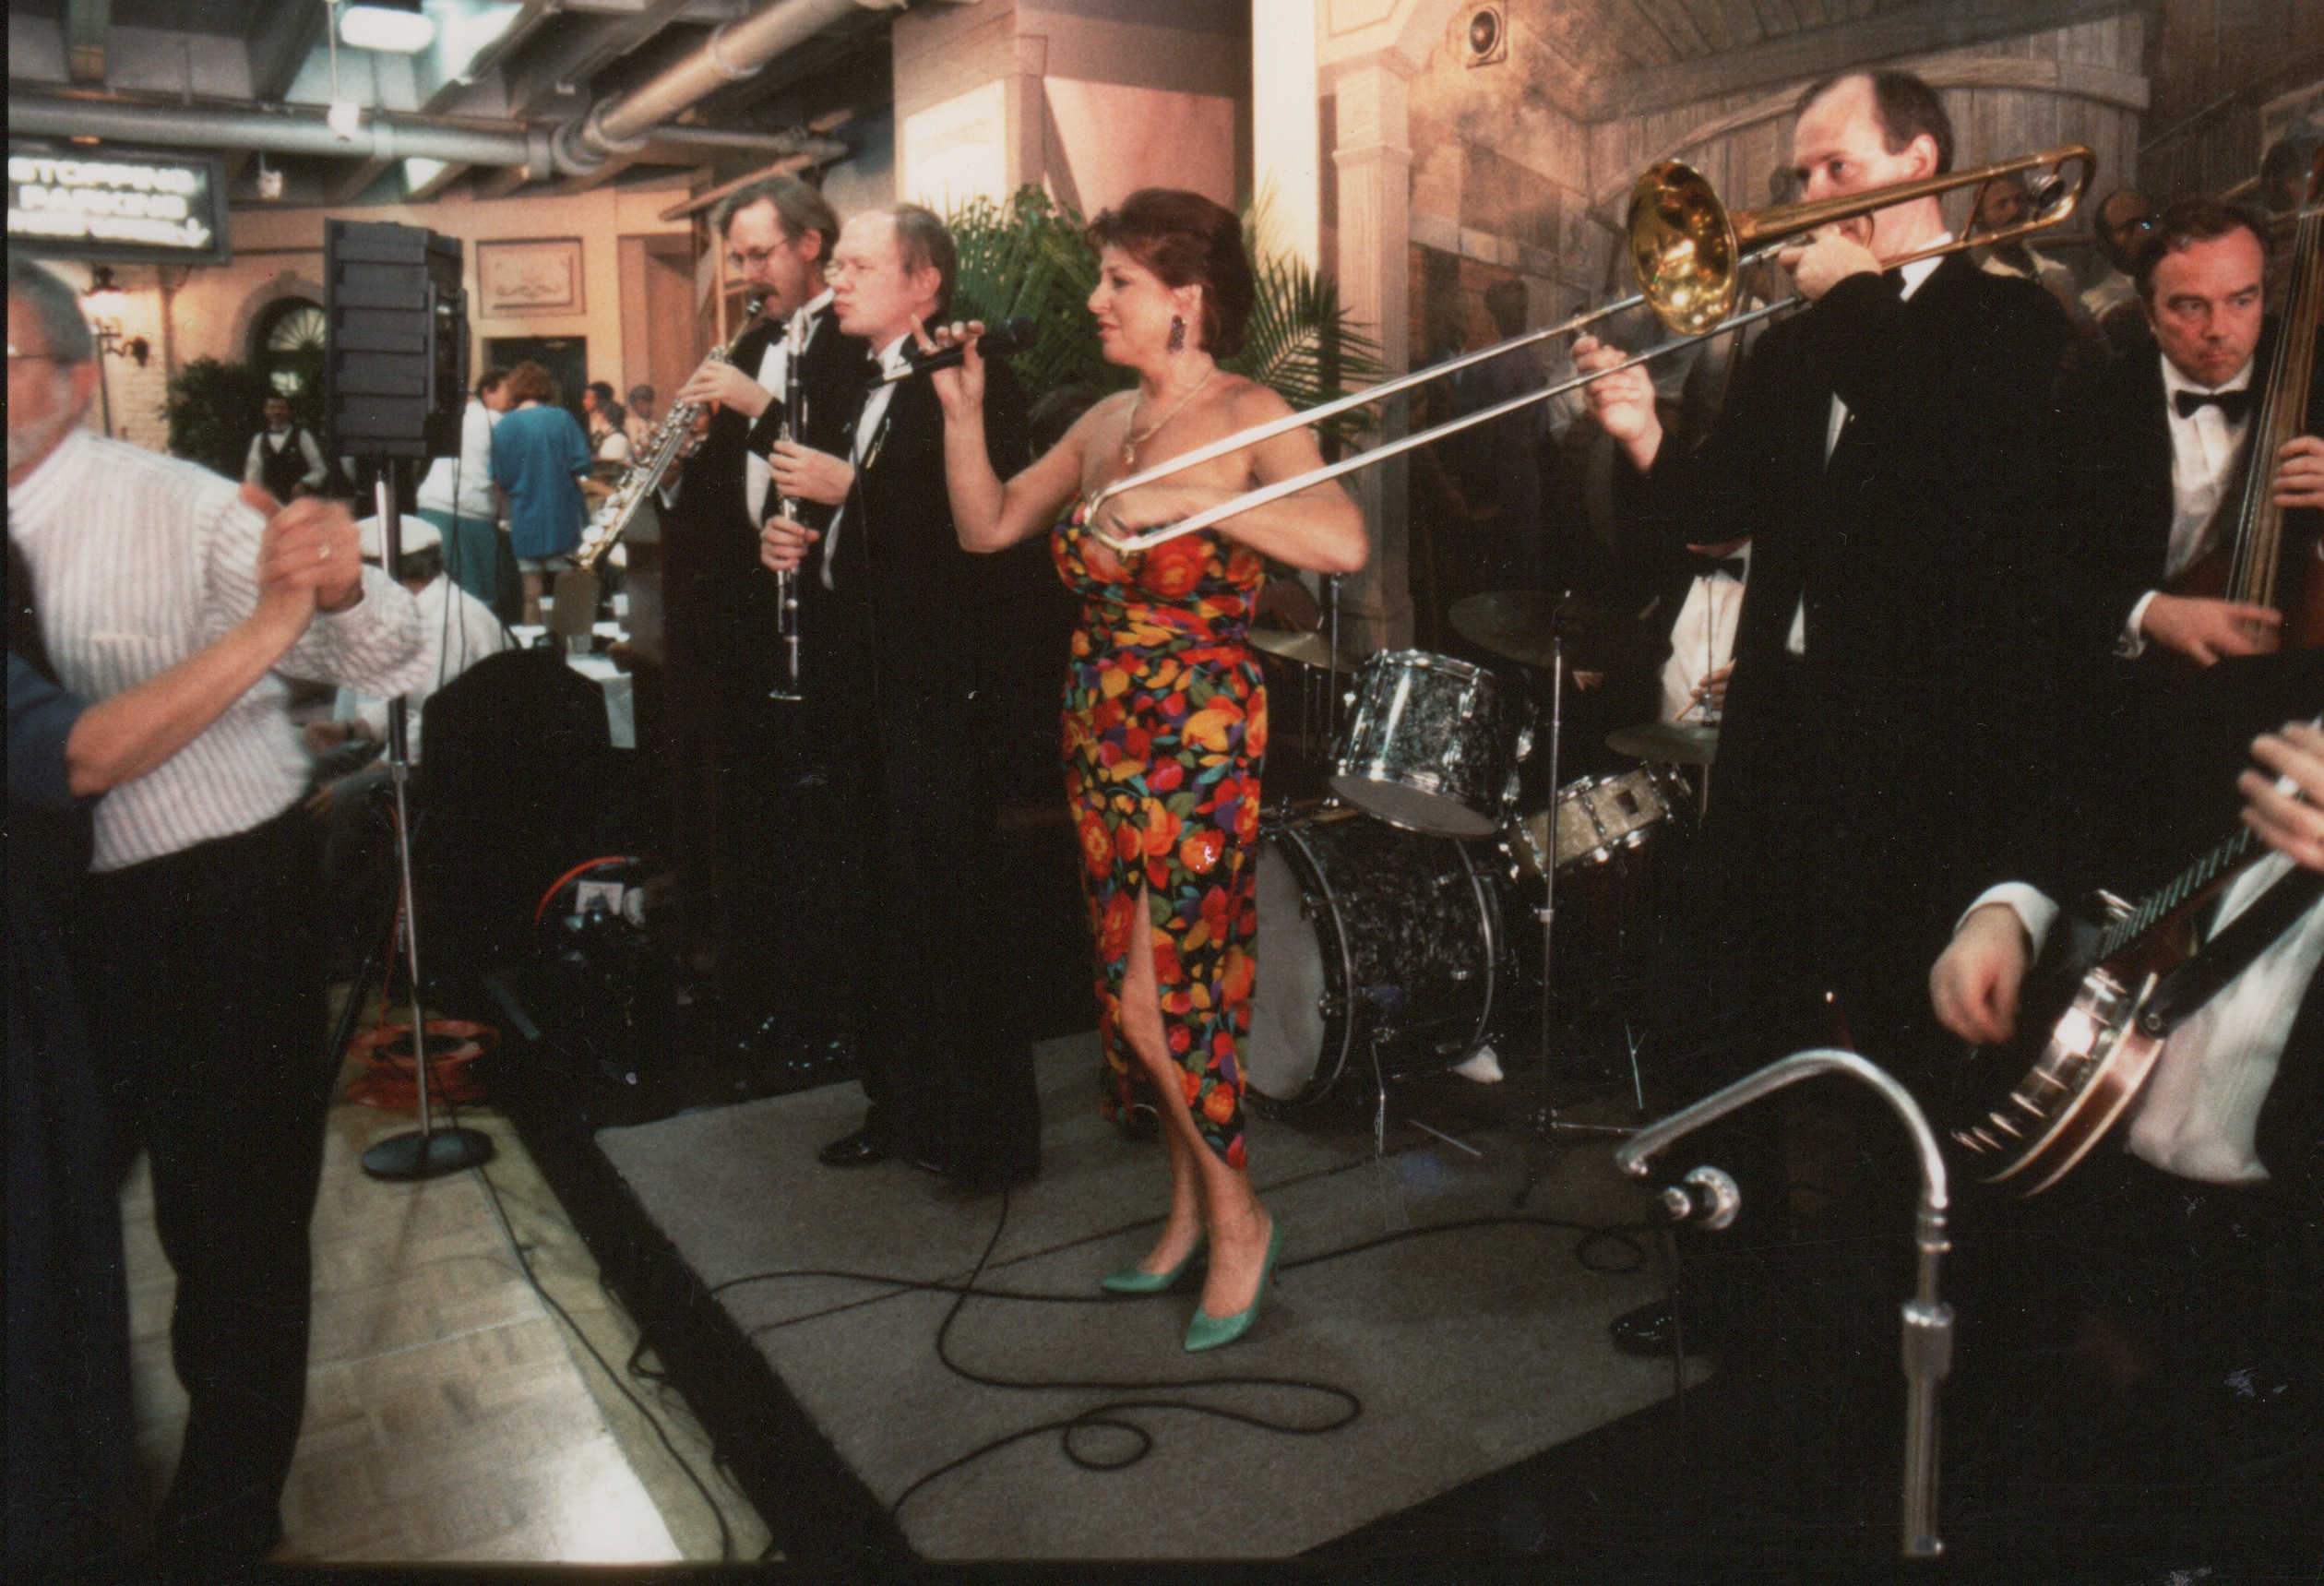 Reine Rimon ja Hot Papas esiintyi New Orleans Jazz & Heritage Festivaaleilla vuonna 1996. Reine ja kumppanit viihdyttivät yleisöä mm. New Orleans Jazz Clubin tanssiaisissa. Kuva: Rainer K. Lampinen, FRPS.